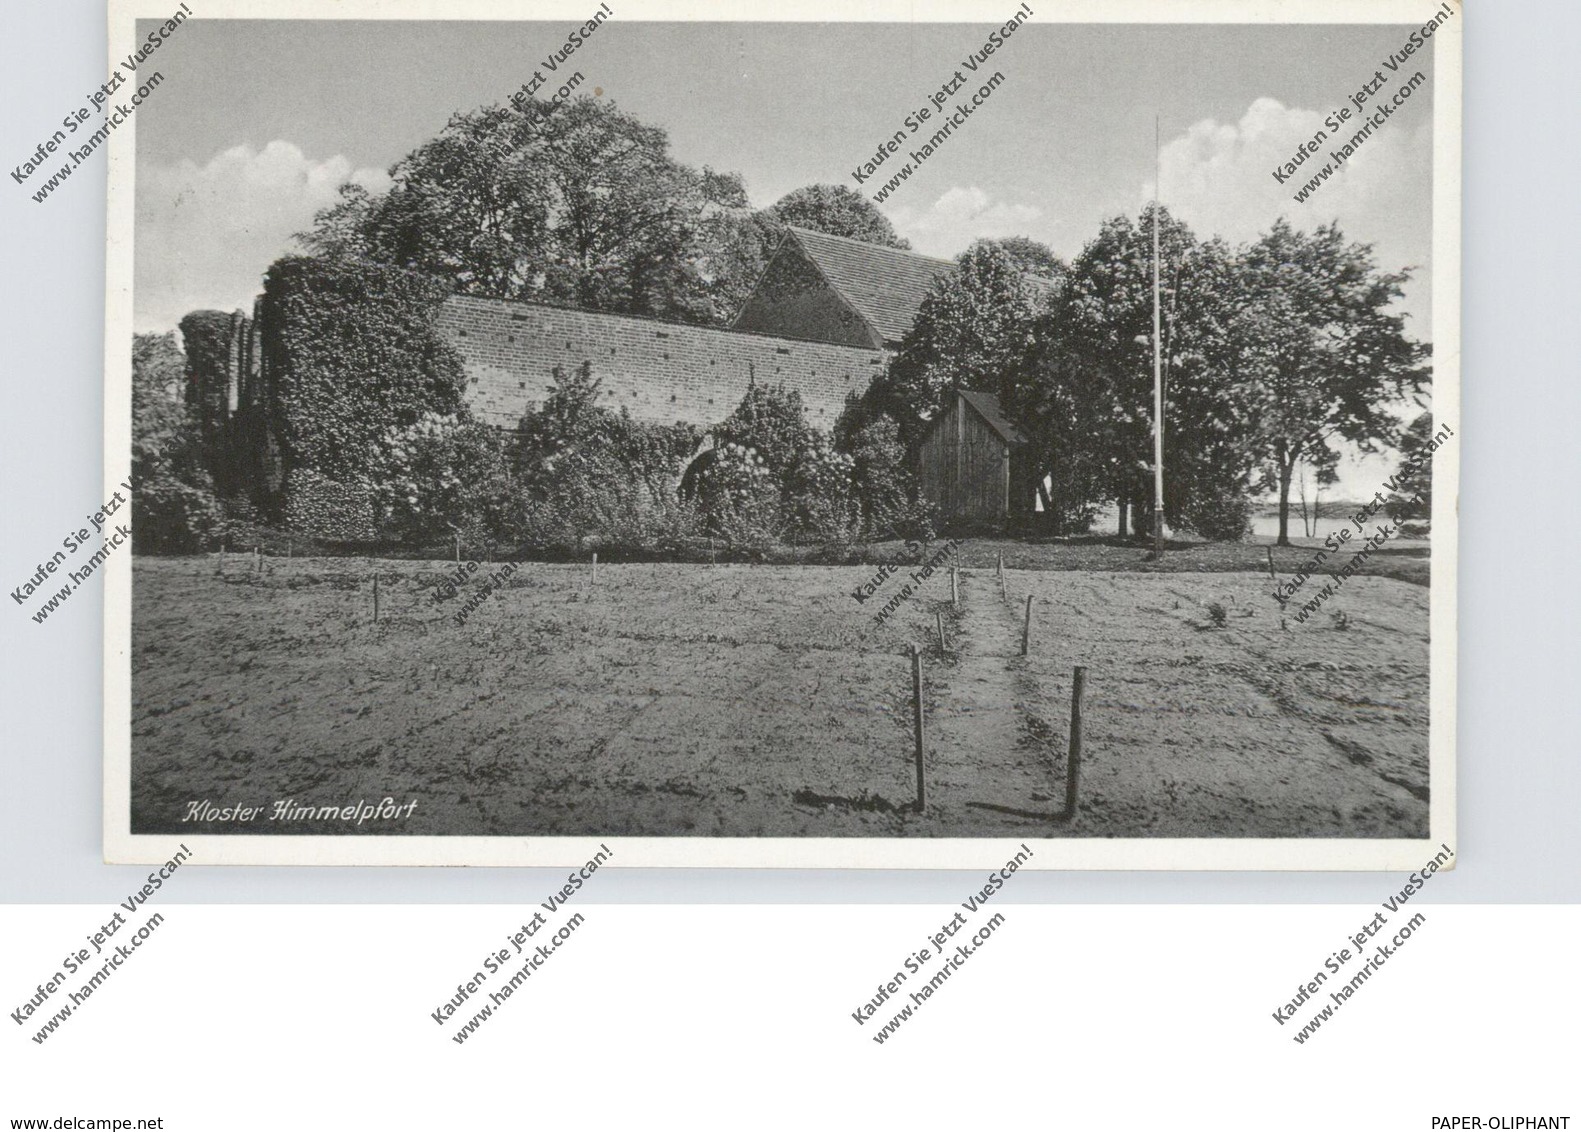 0-1432 FÜRSTENBERG - HIMMELPFORT, Kloster - Fuerstenberg